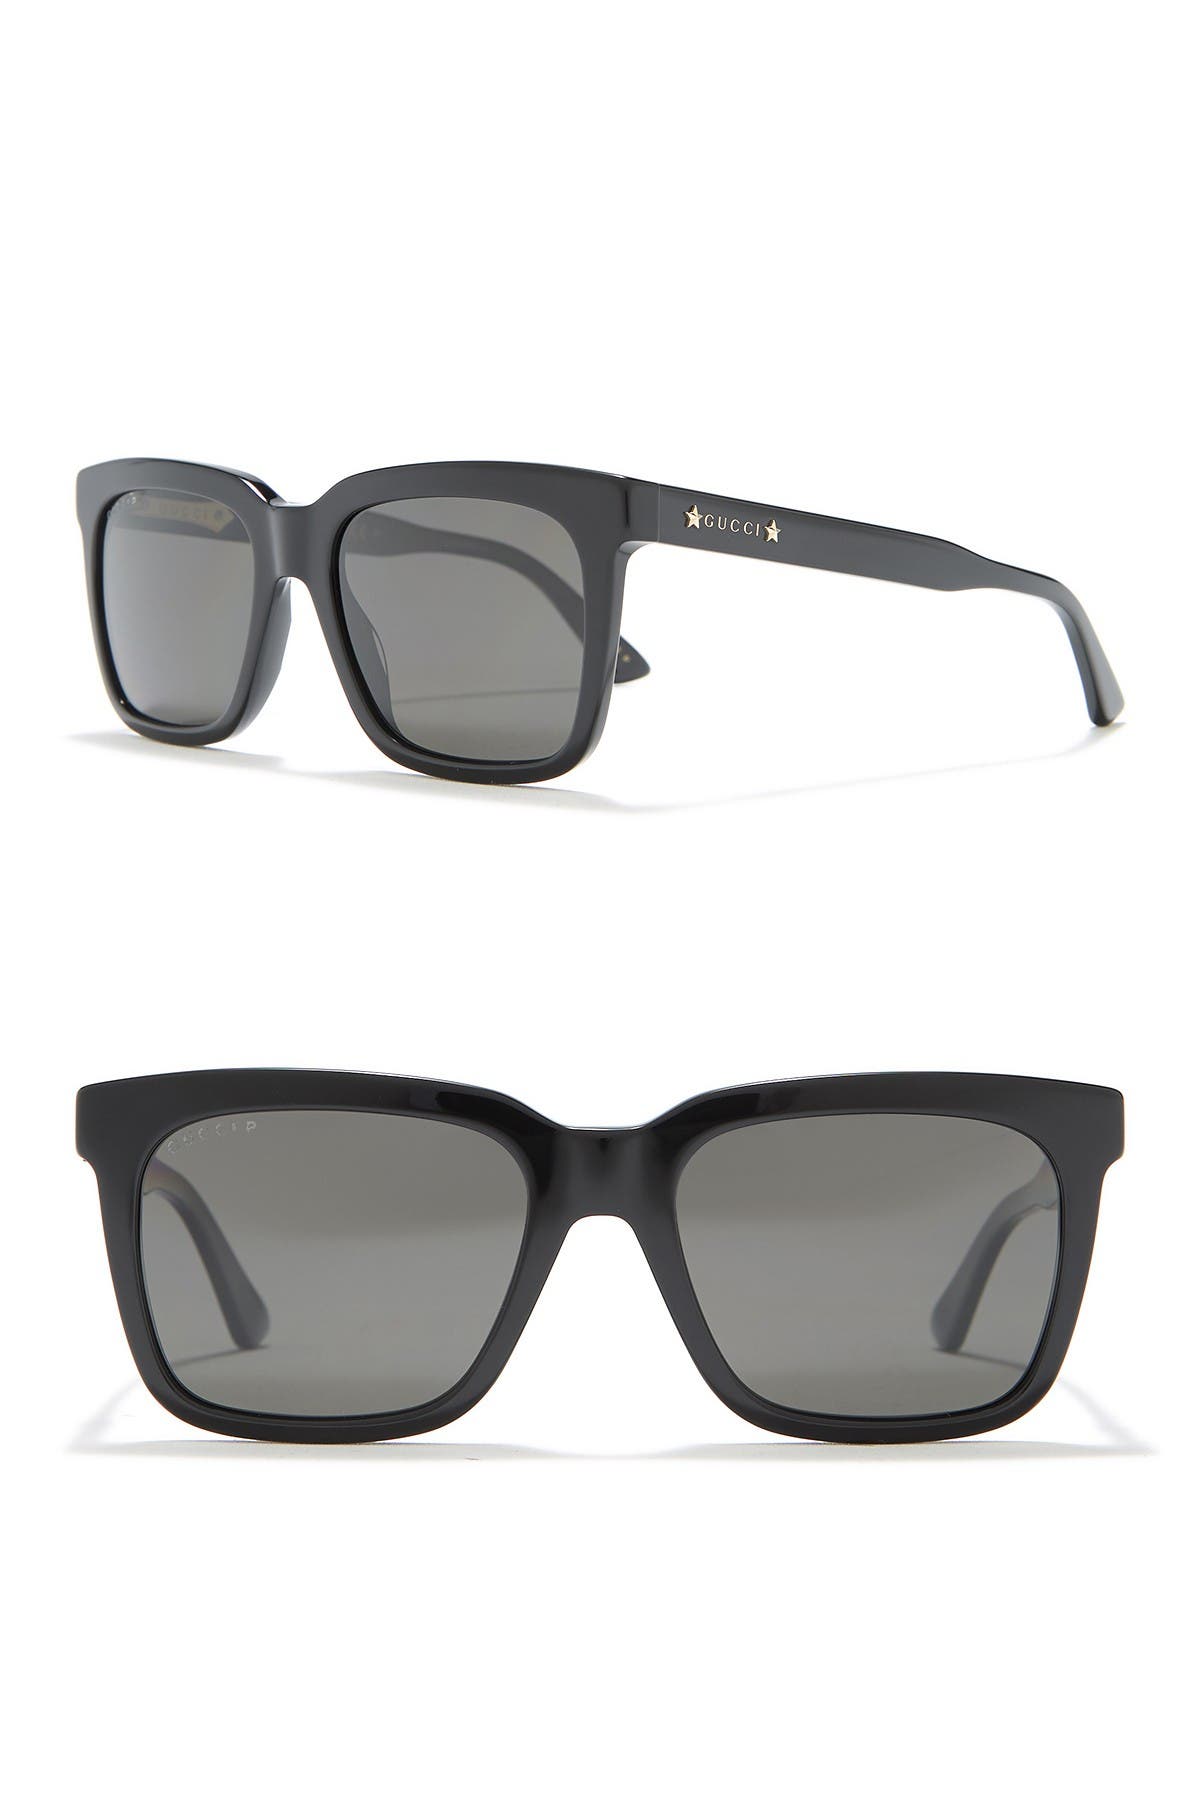 GUCCI | 53mm Square Core Sunglasses 